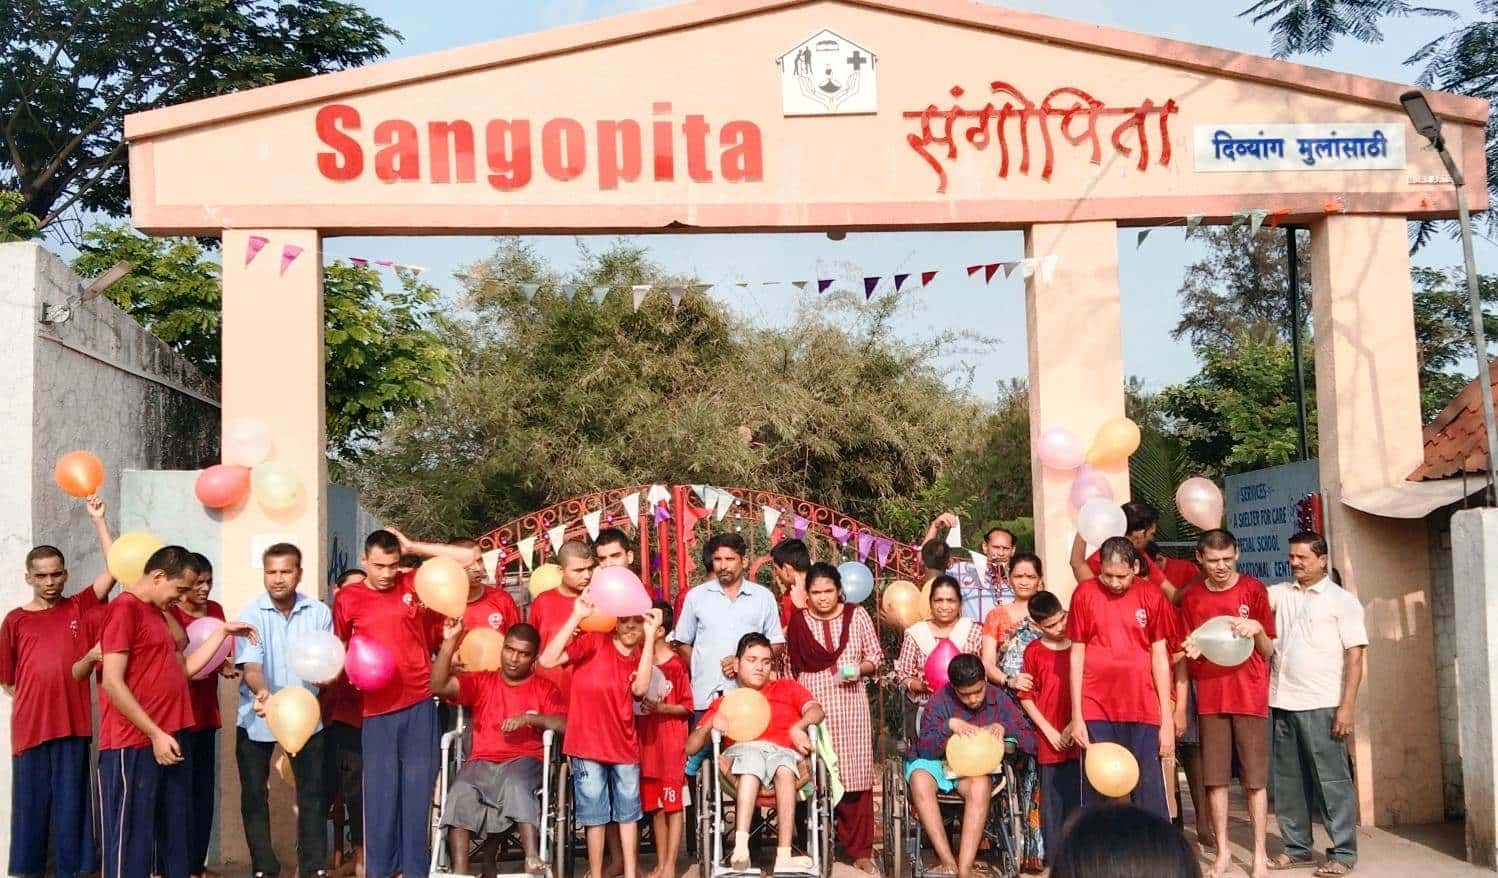 There are 62 children in Sangopita